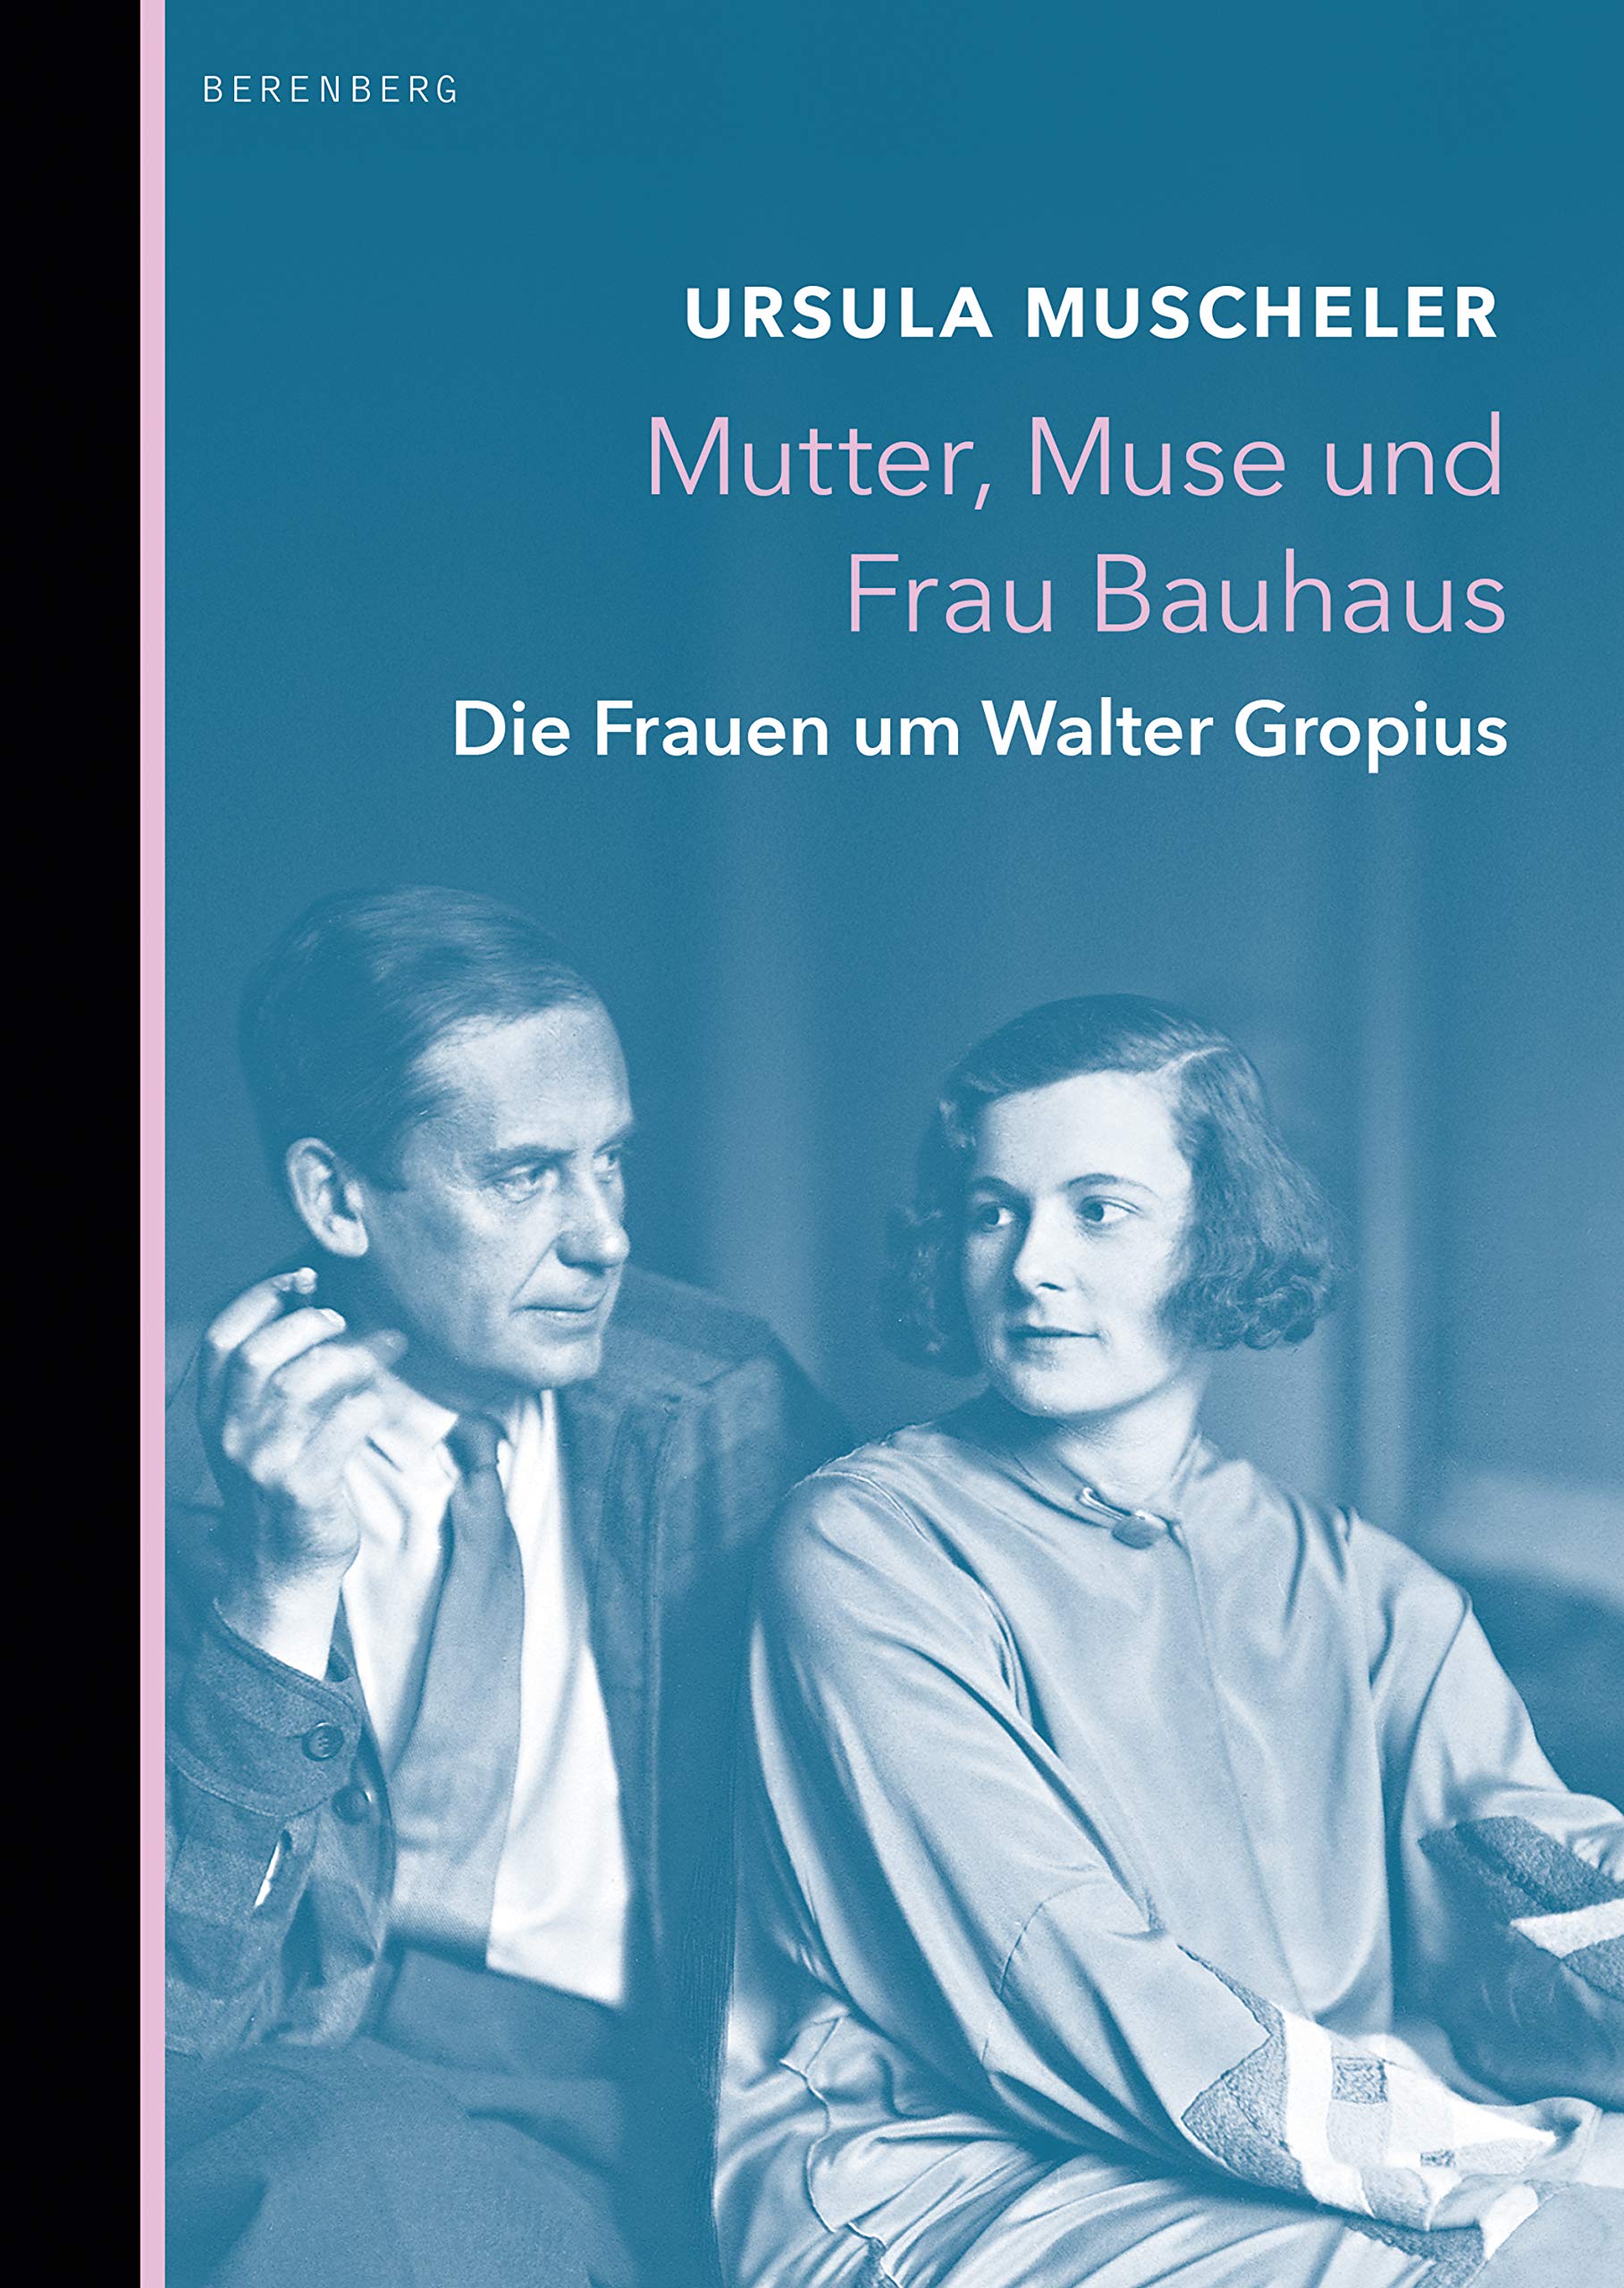 Mutter, Muse und Frau Bauhaus: Die Frauen um Walter Gropius (German Edition)